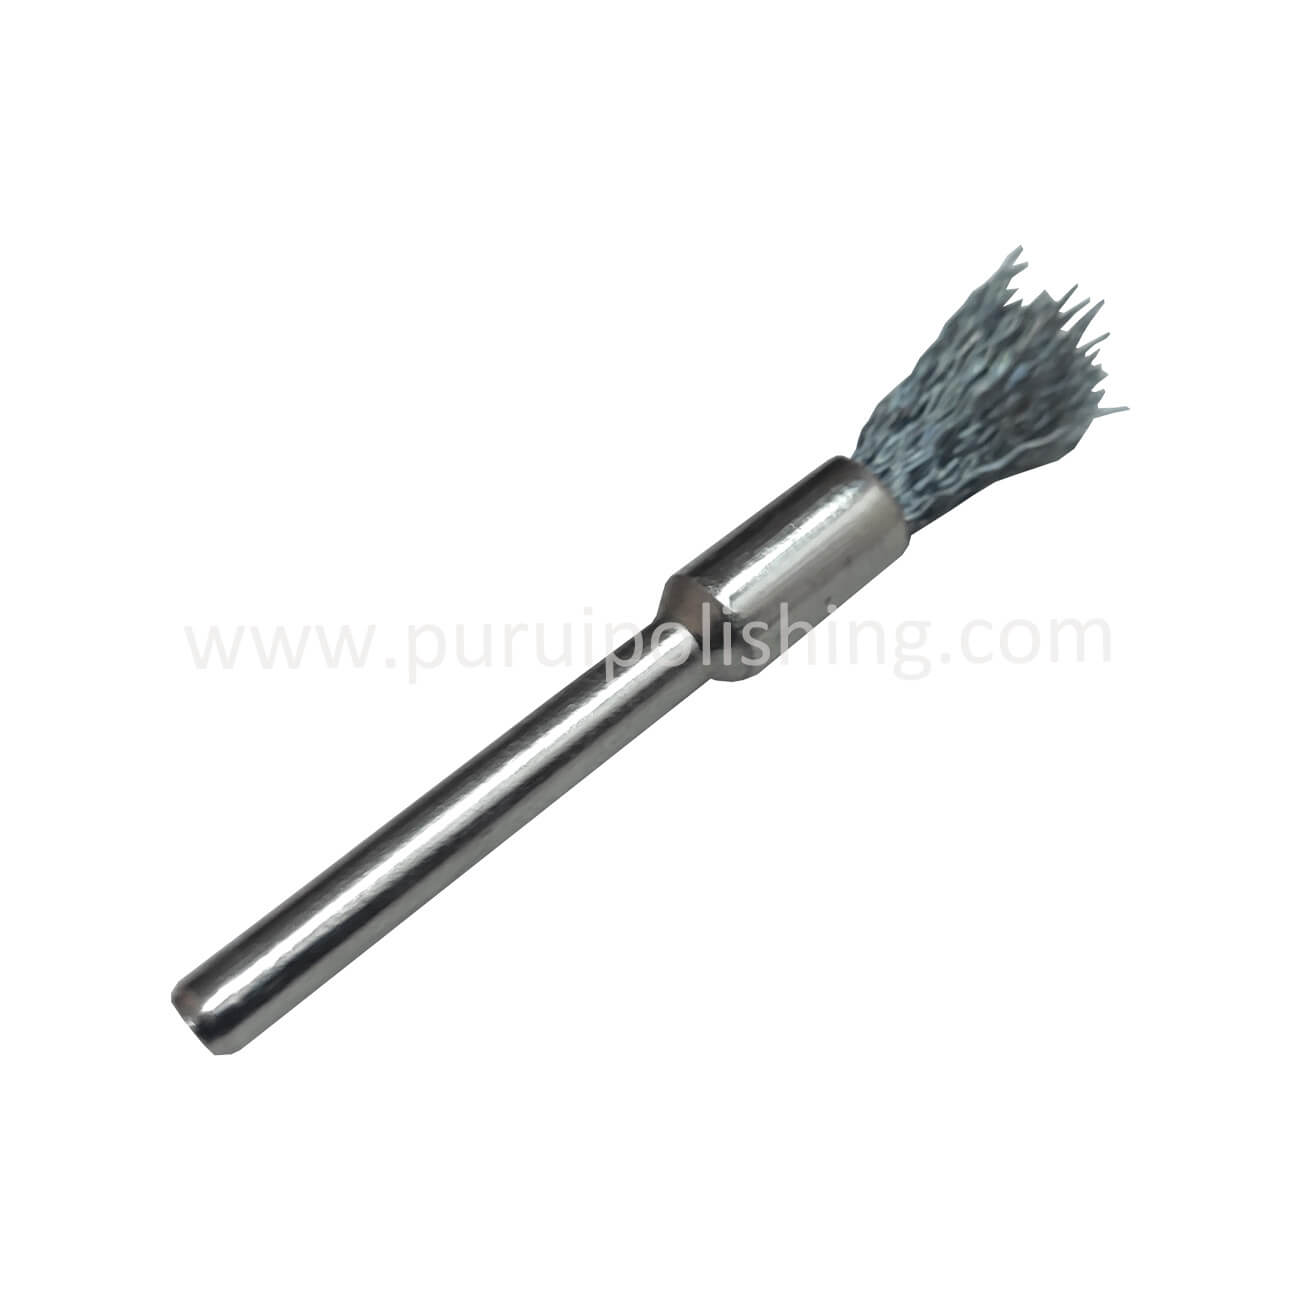 Pen-shaped Dremel Stainless Steel Brush